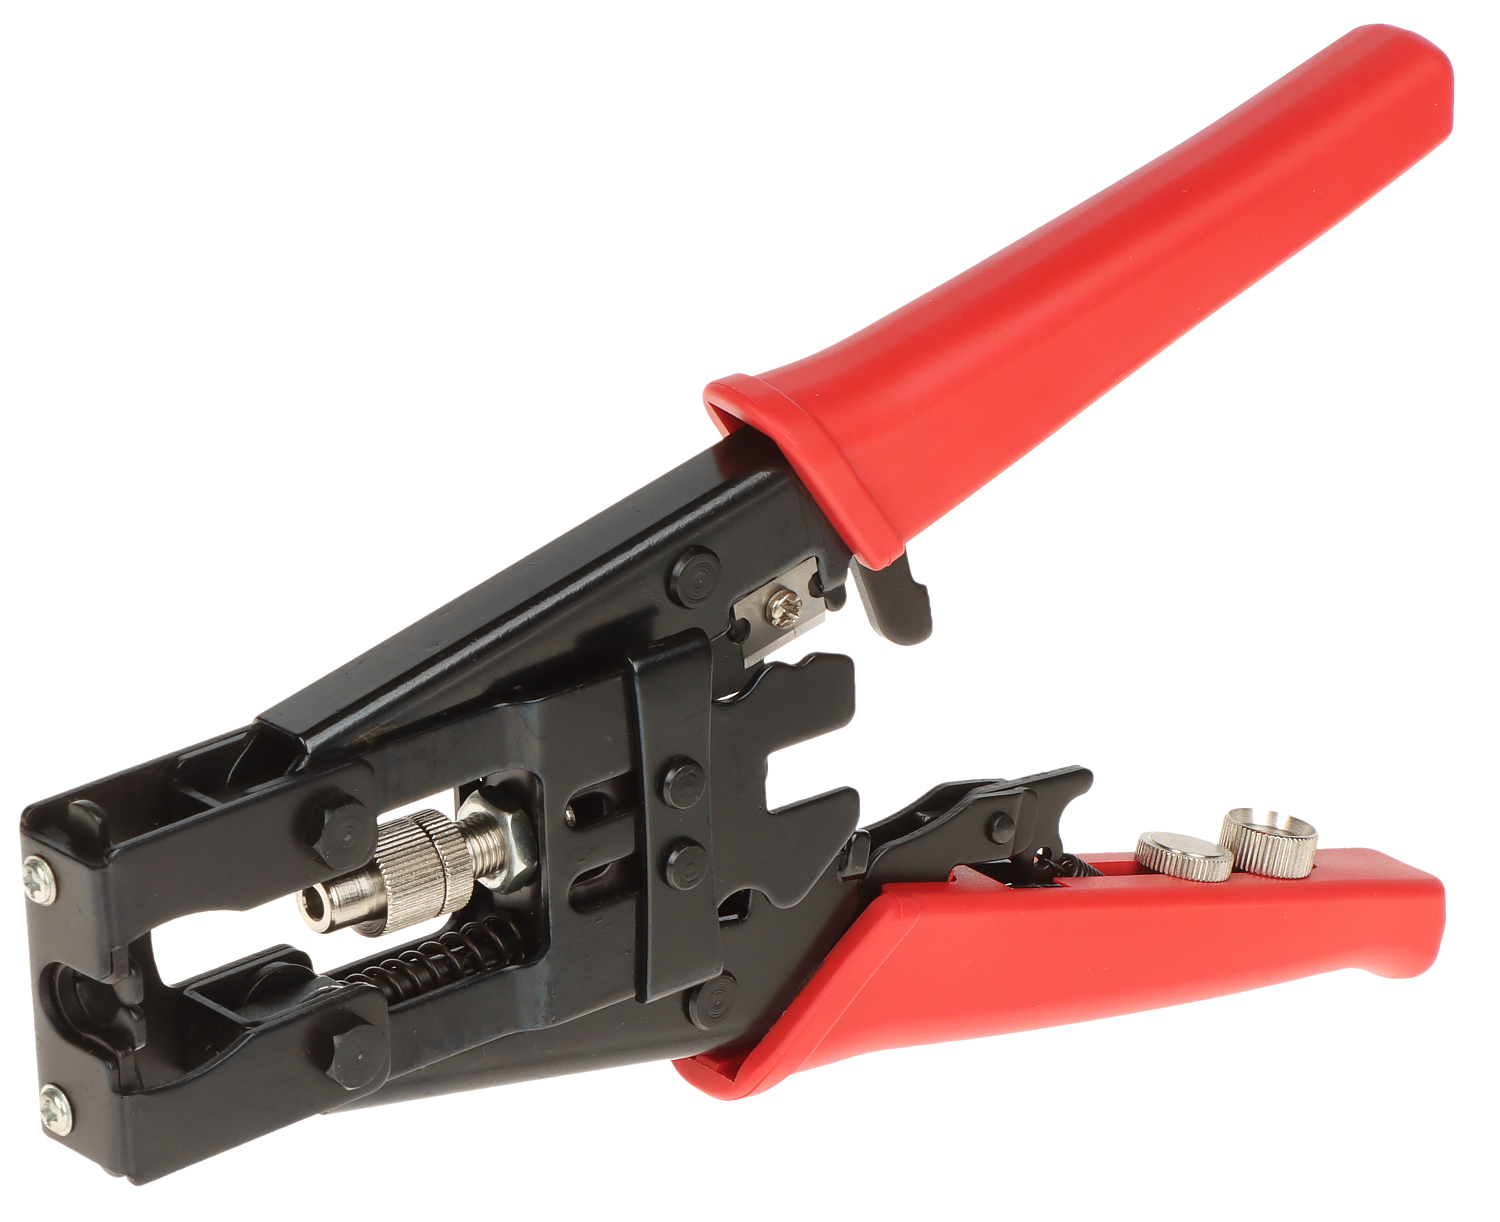 COMPRESSION TOOL HT-5082R - Crimping Tools for Compression Connectors -  Delta